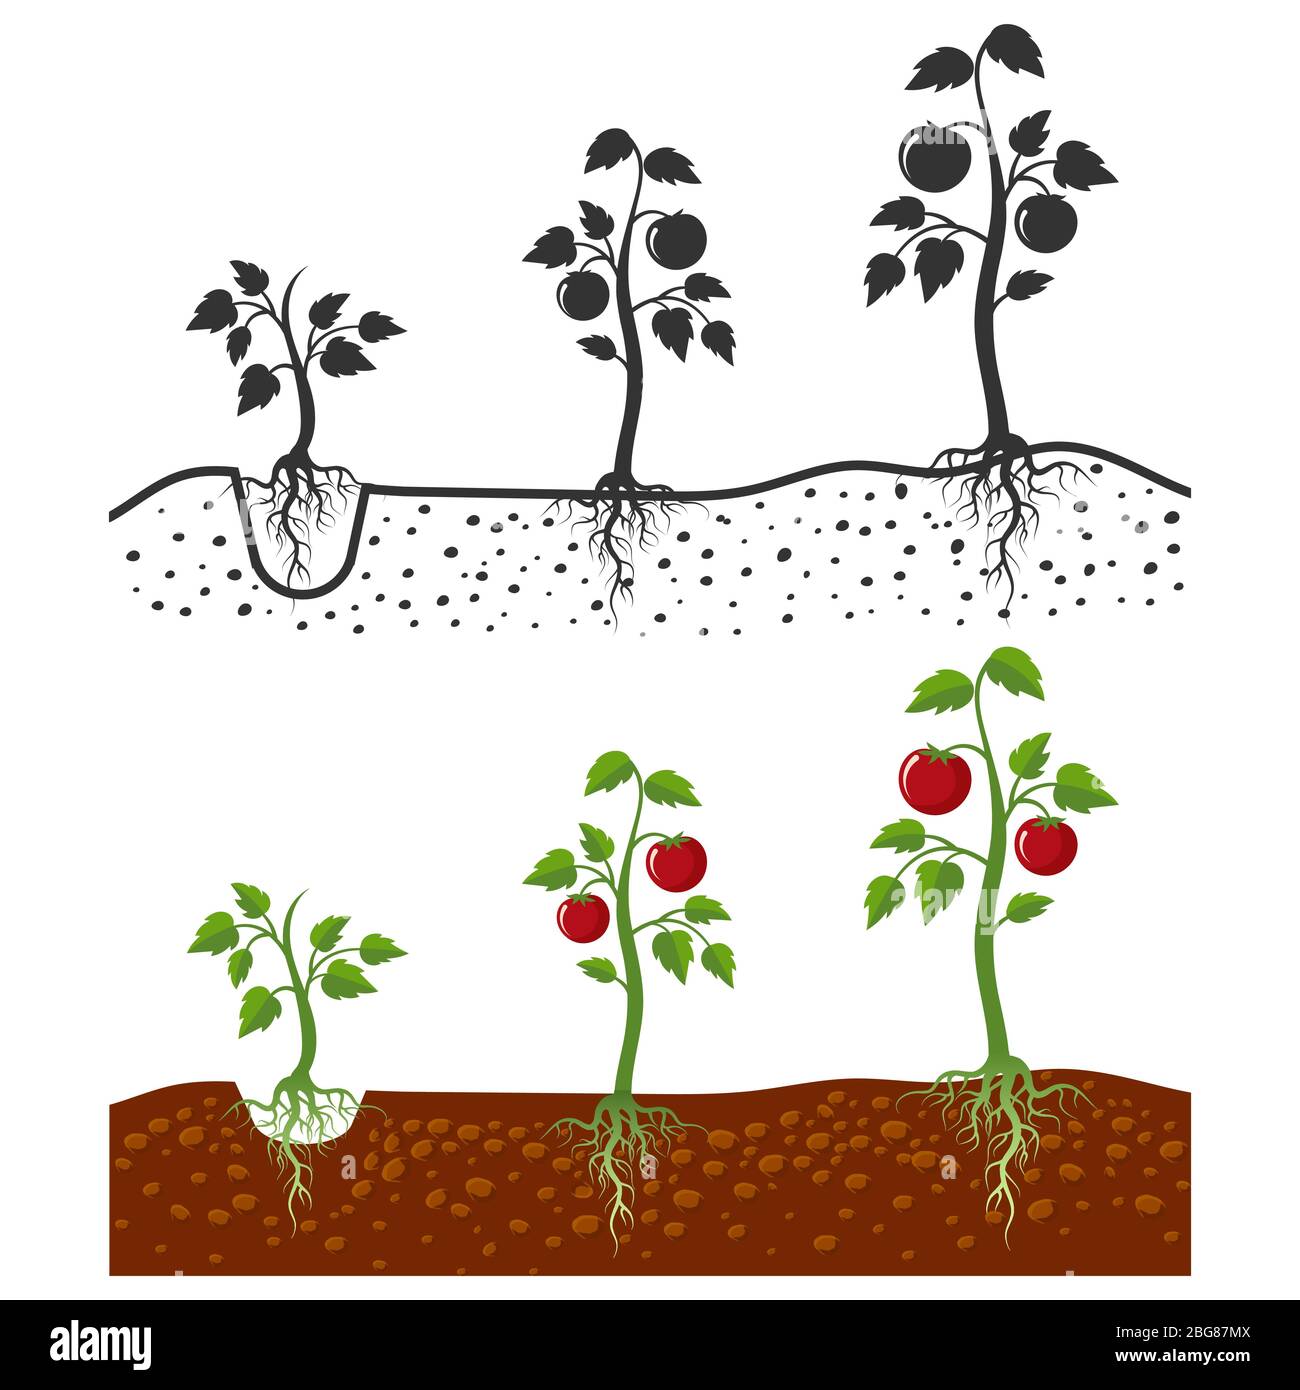 Plante de tomate avec racines vecteur étapes de croissance - style de dessin animé et silhouettes de tomates isolées sur fond blanc. Culture de tomates végétales, illustration du germe agricole Illustration de Vecteur